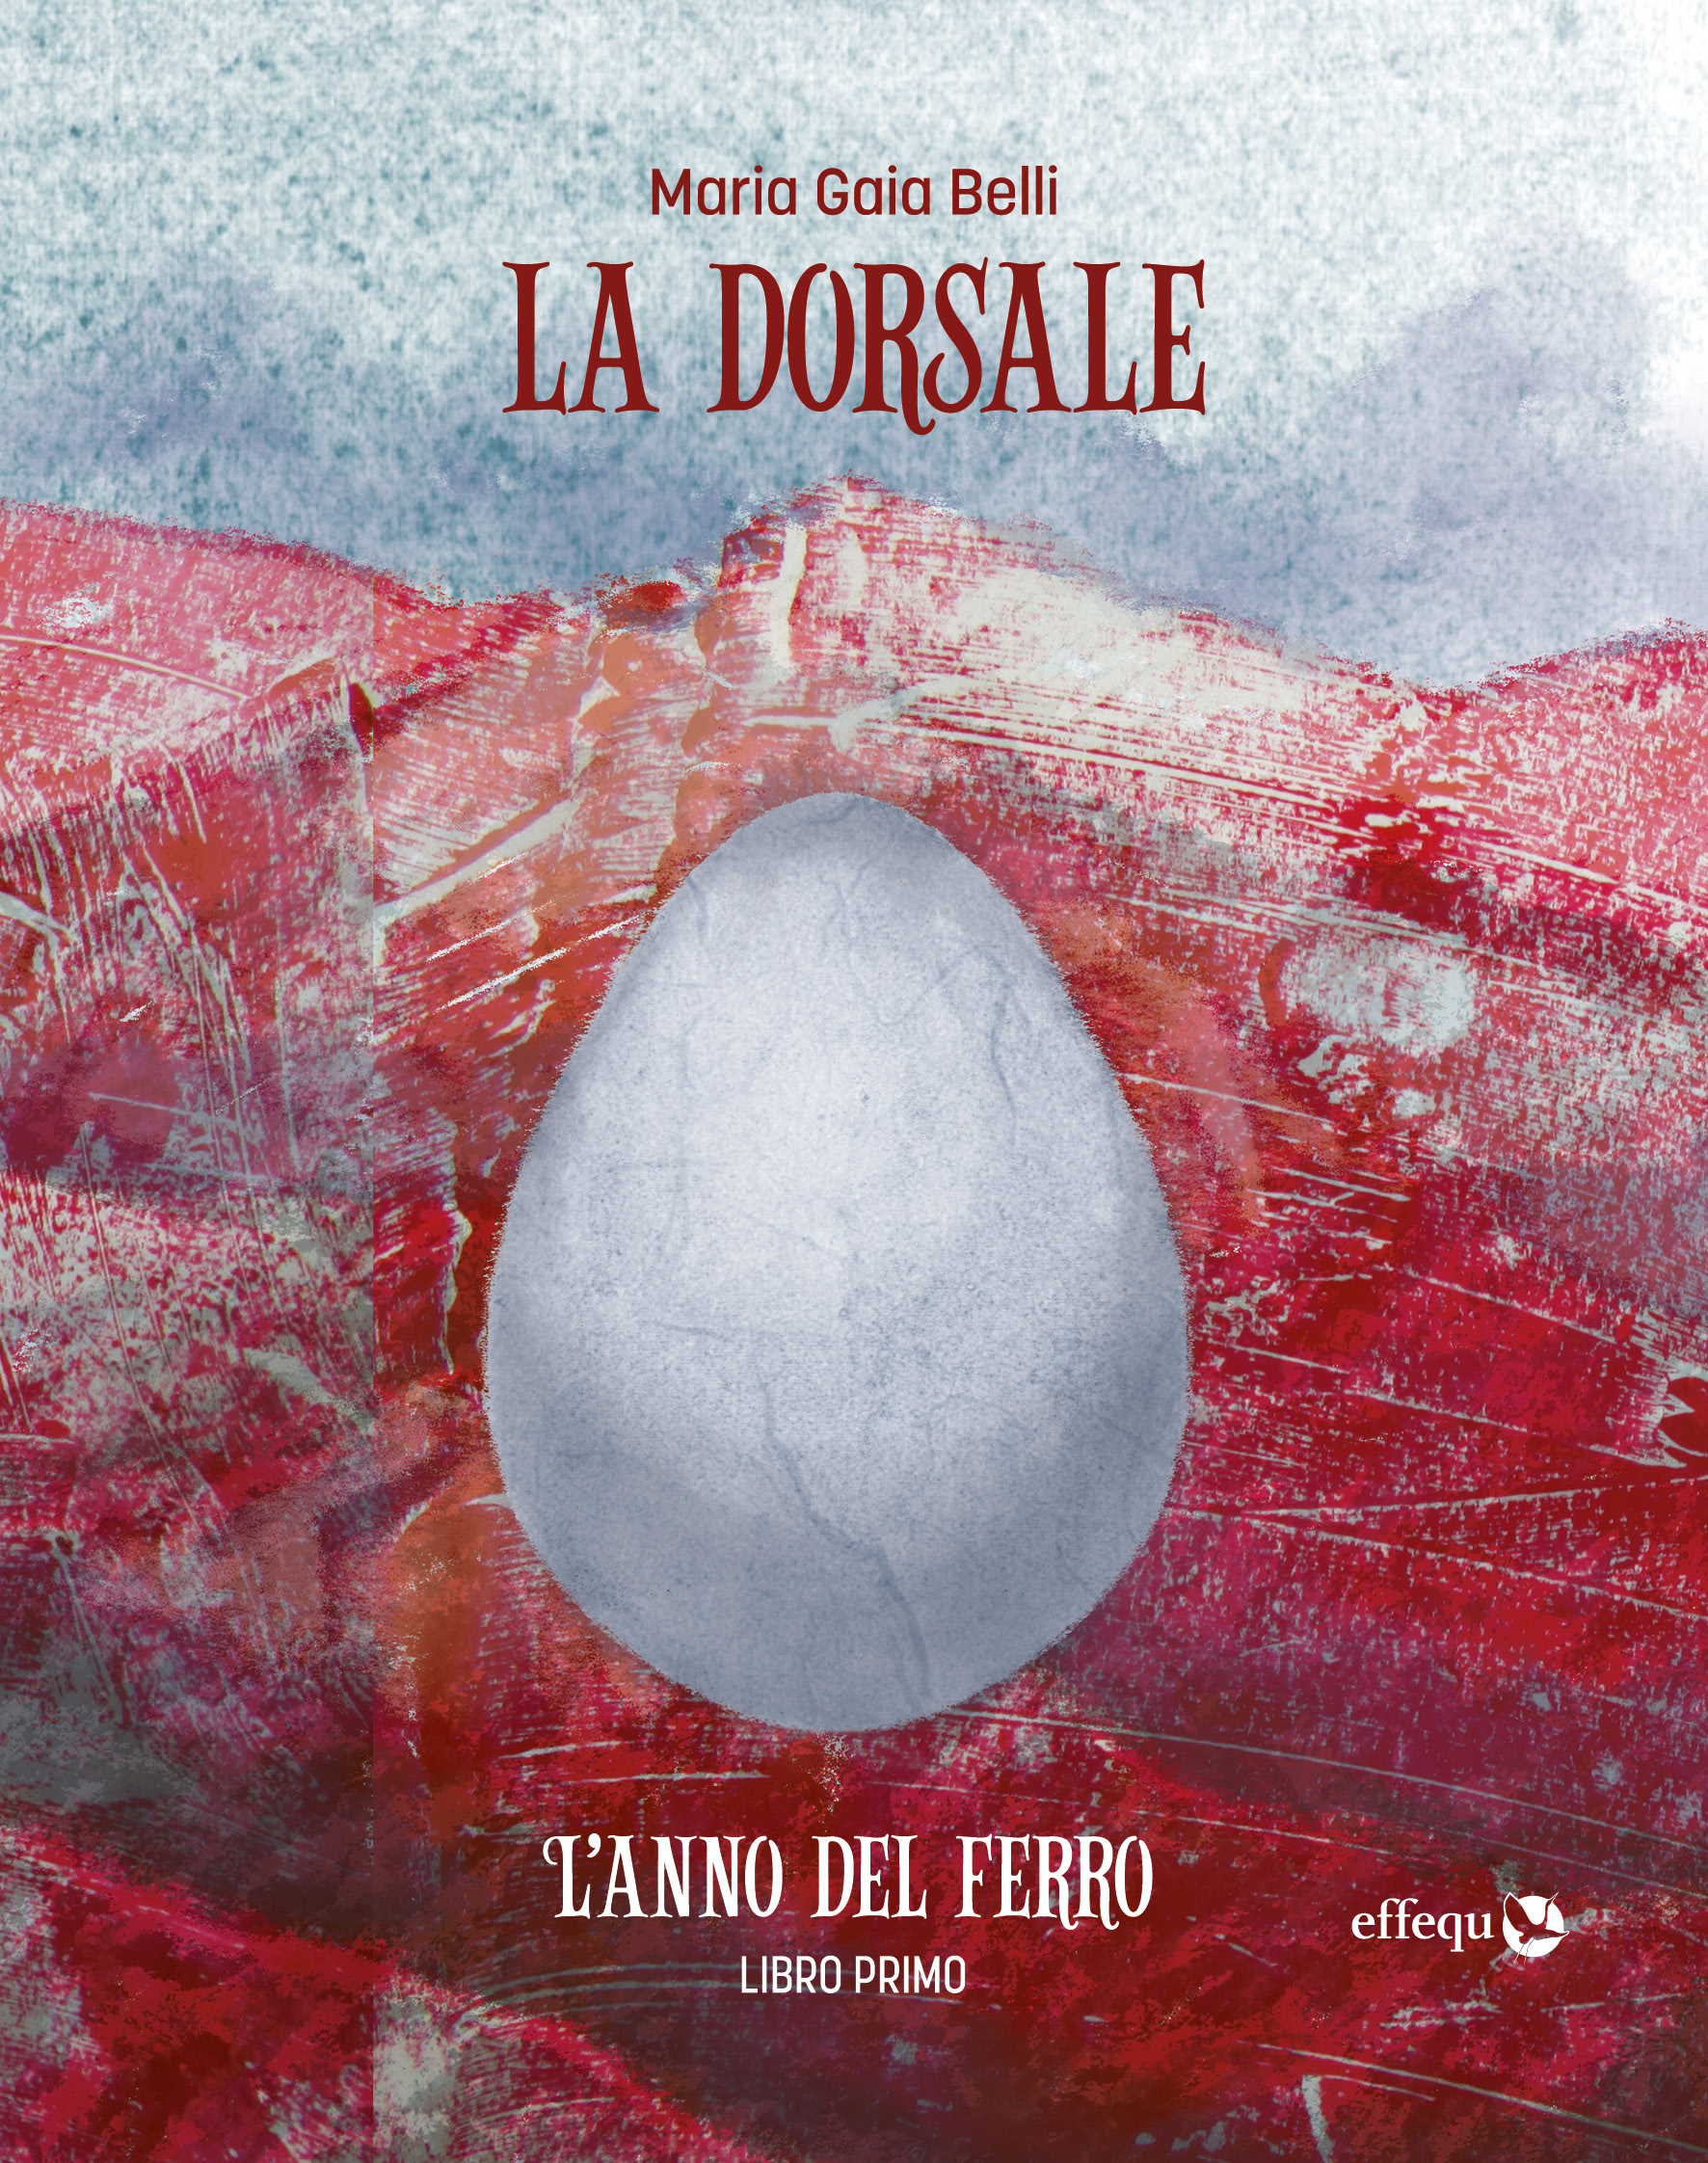 L'anno del ferro (Paperback, Italiano language, Effequ)